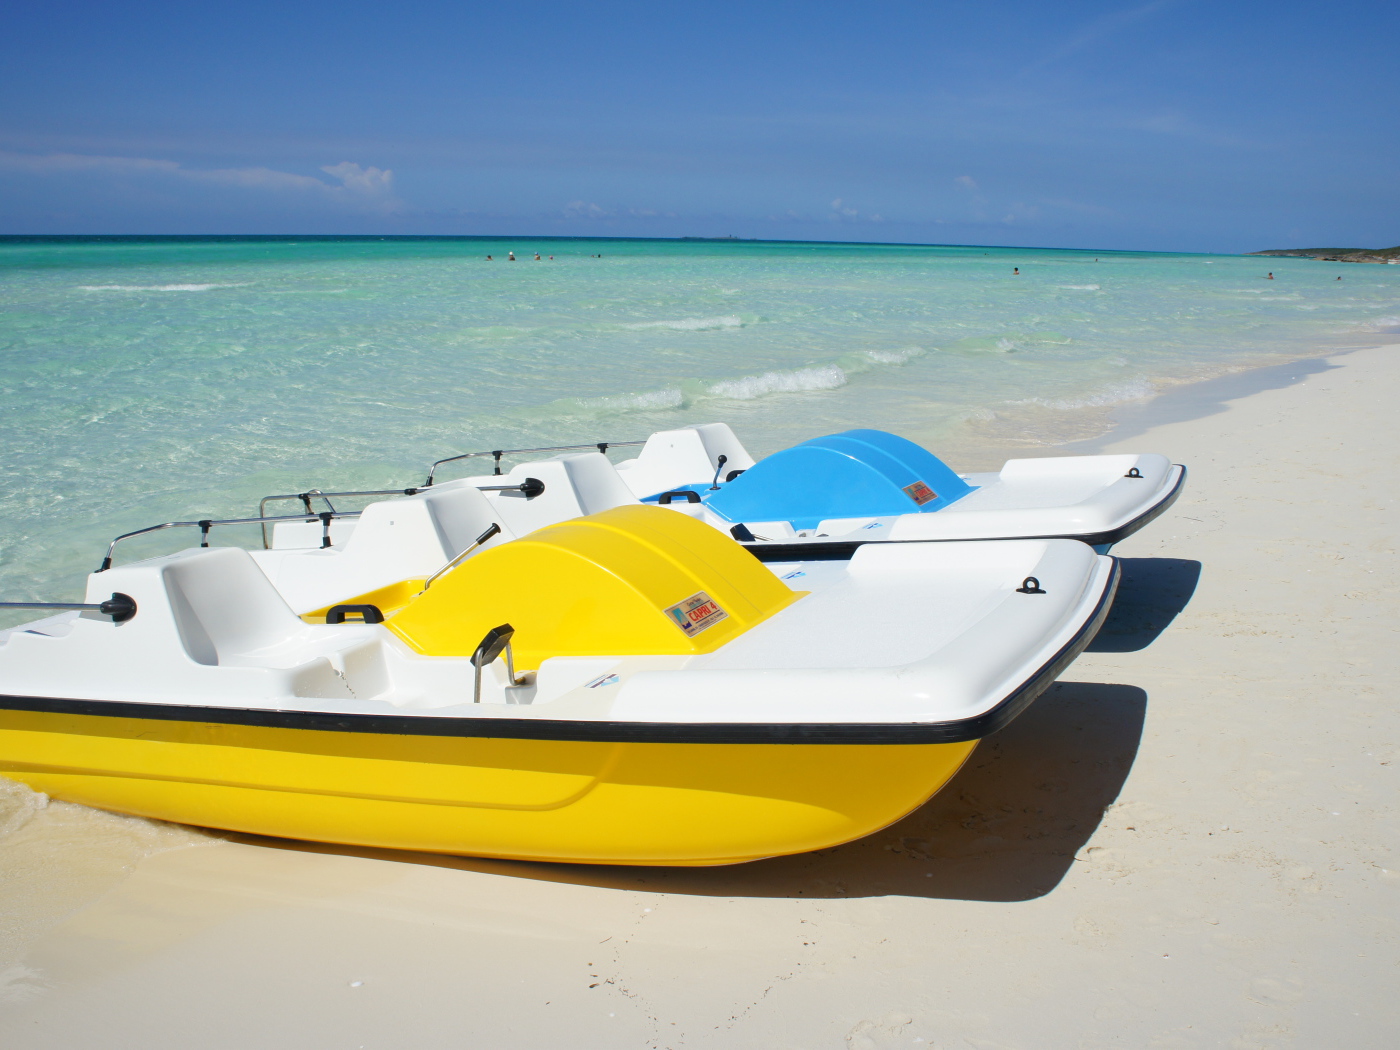 Лодки на пляже на курорте Кайо Санта Мария, Куба